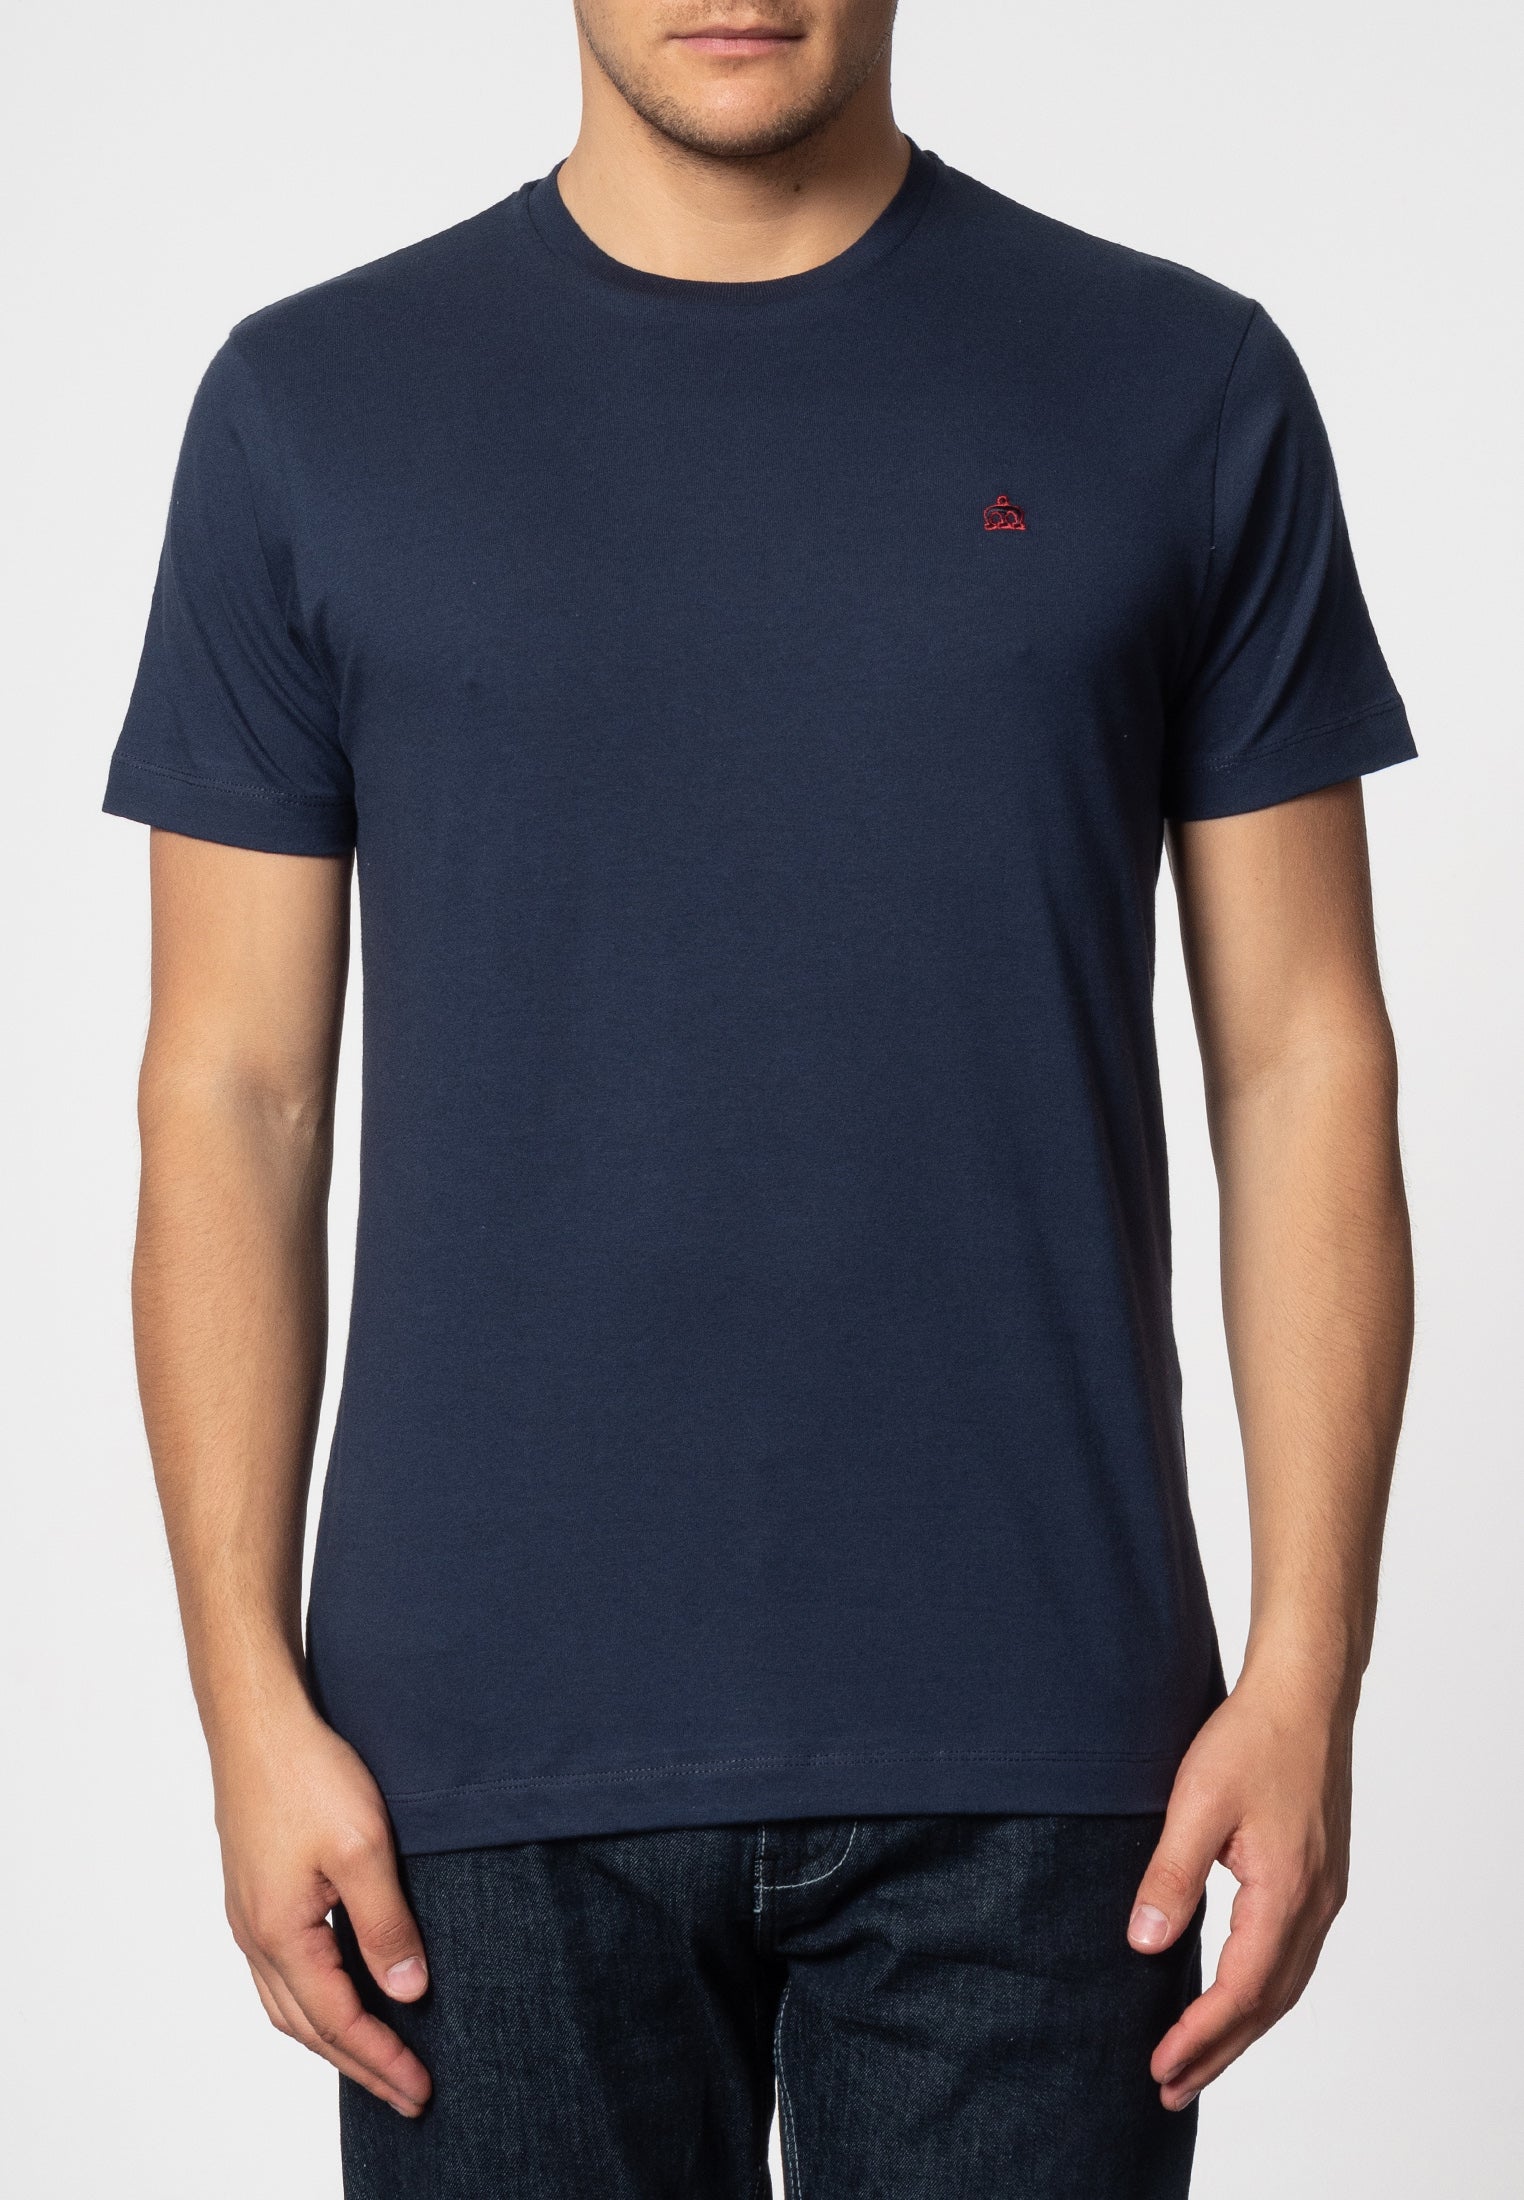 Keyport T-Shirt - Merc London